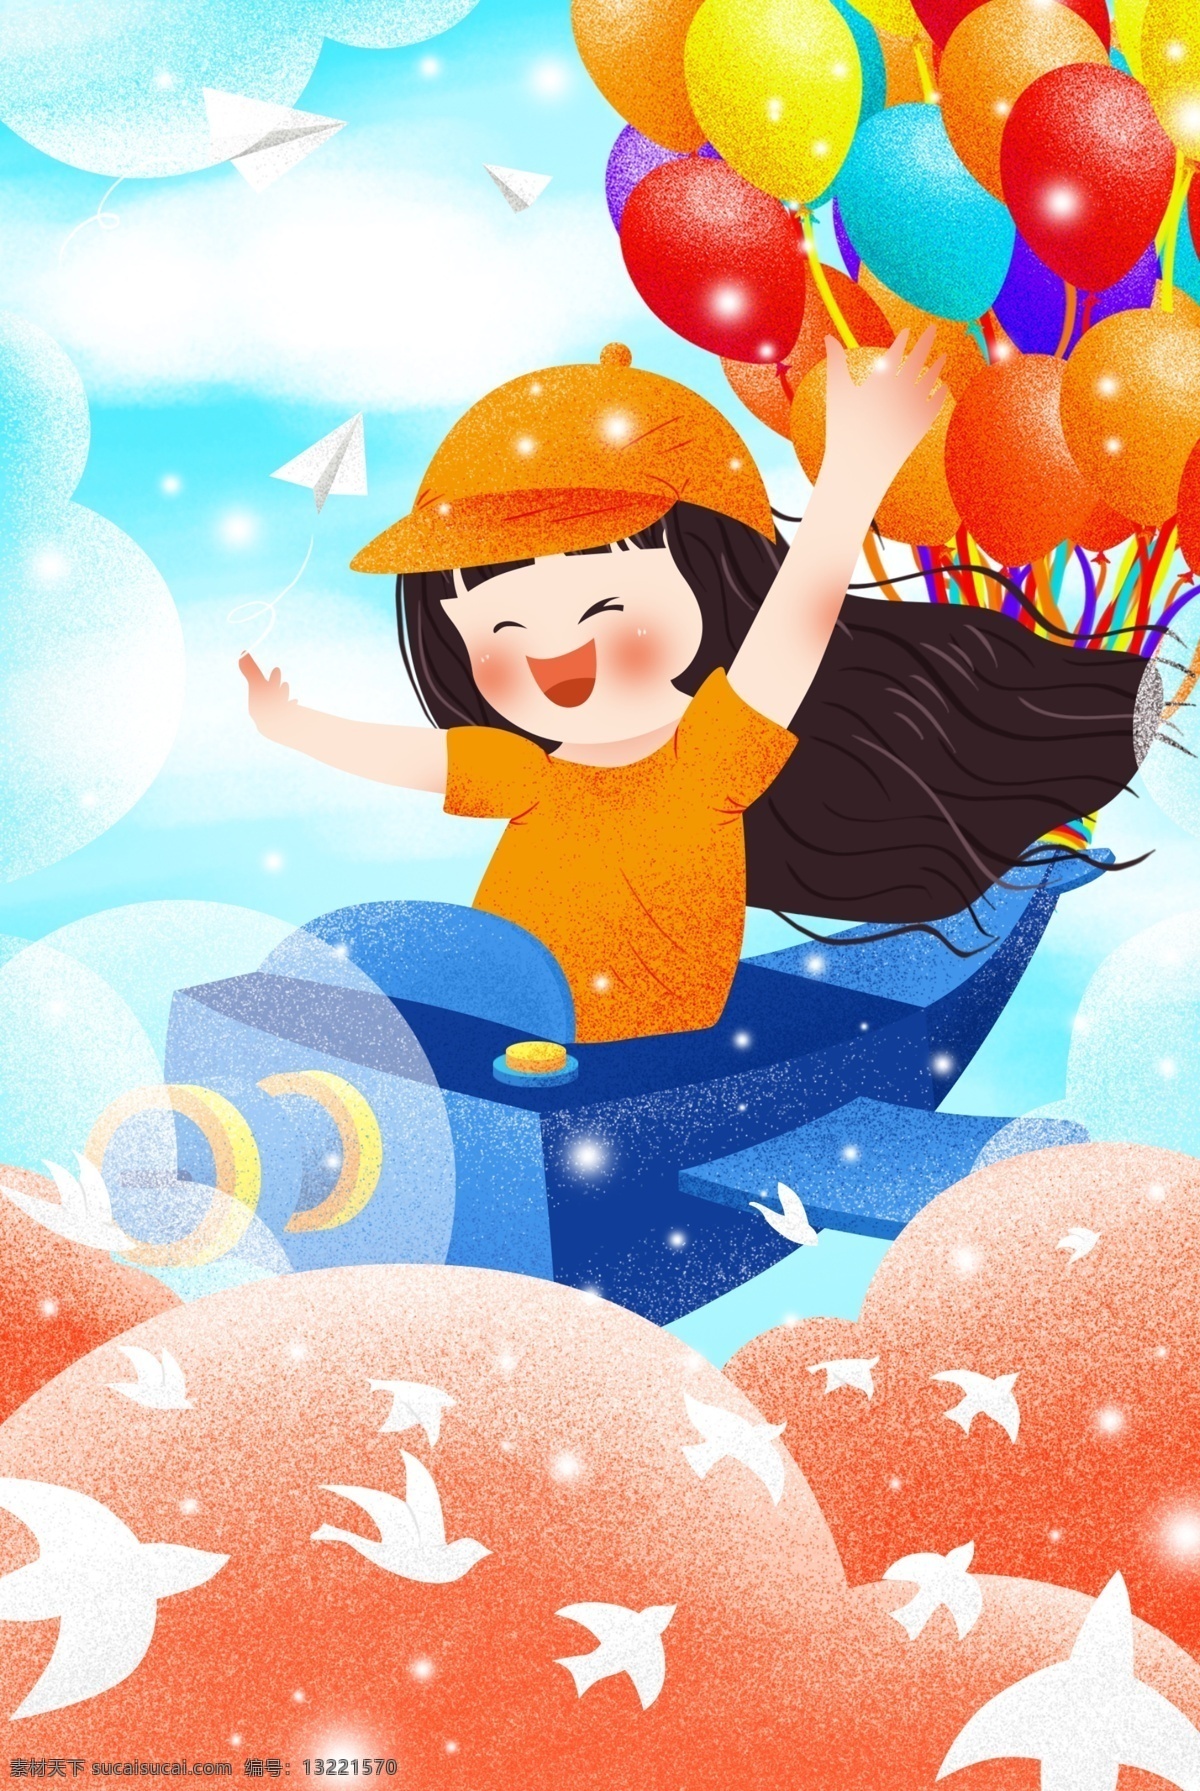 飞机 上 开心 女孩 儿童 节日 背景 图 云朵 纸飞机 清新 彩色气球 61儿童节 儿童节海报 快乐六一 海报背景模板 节日背景 电商背景